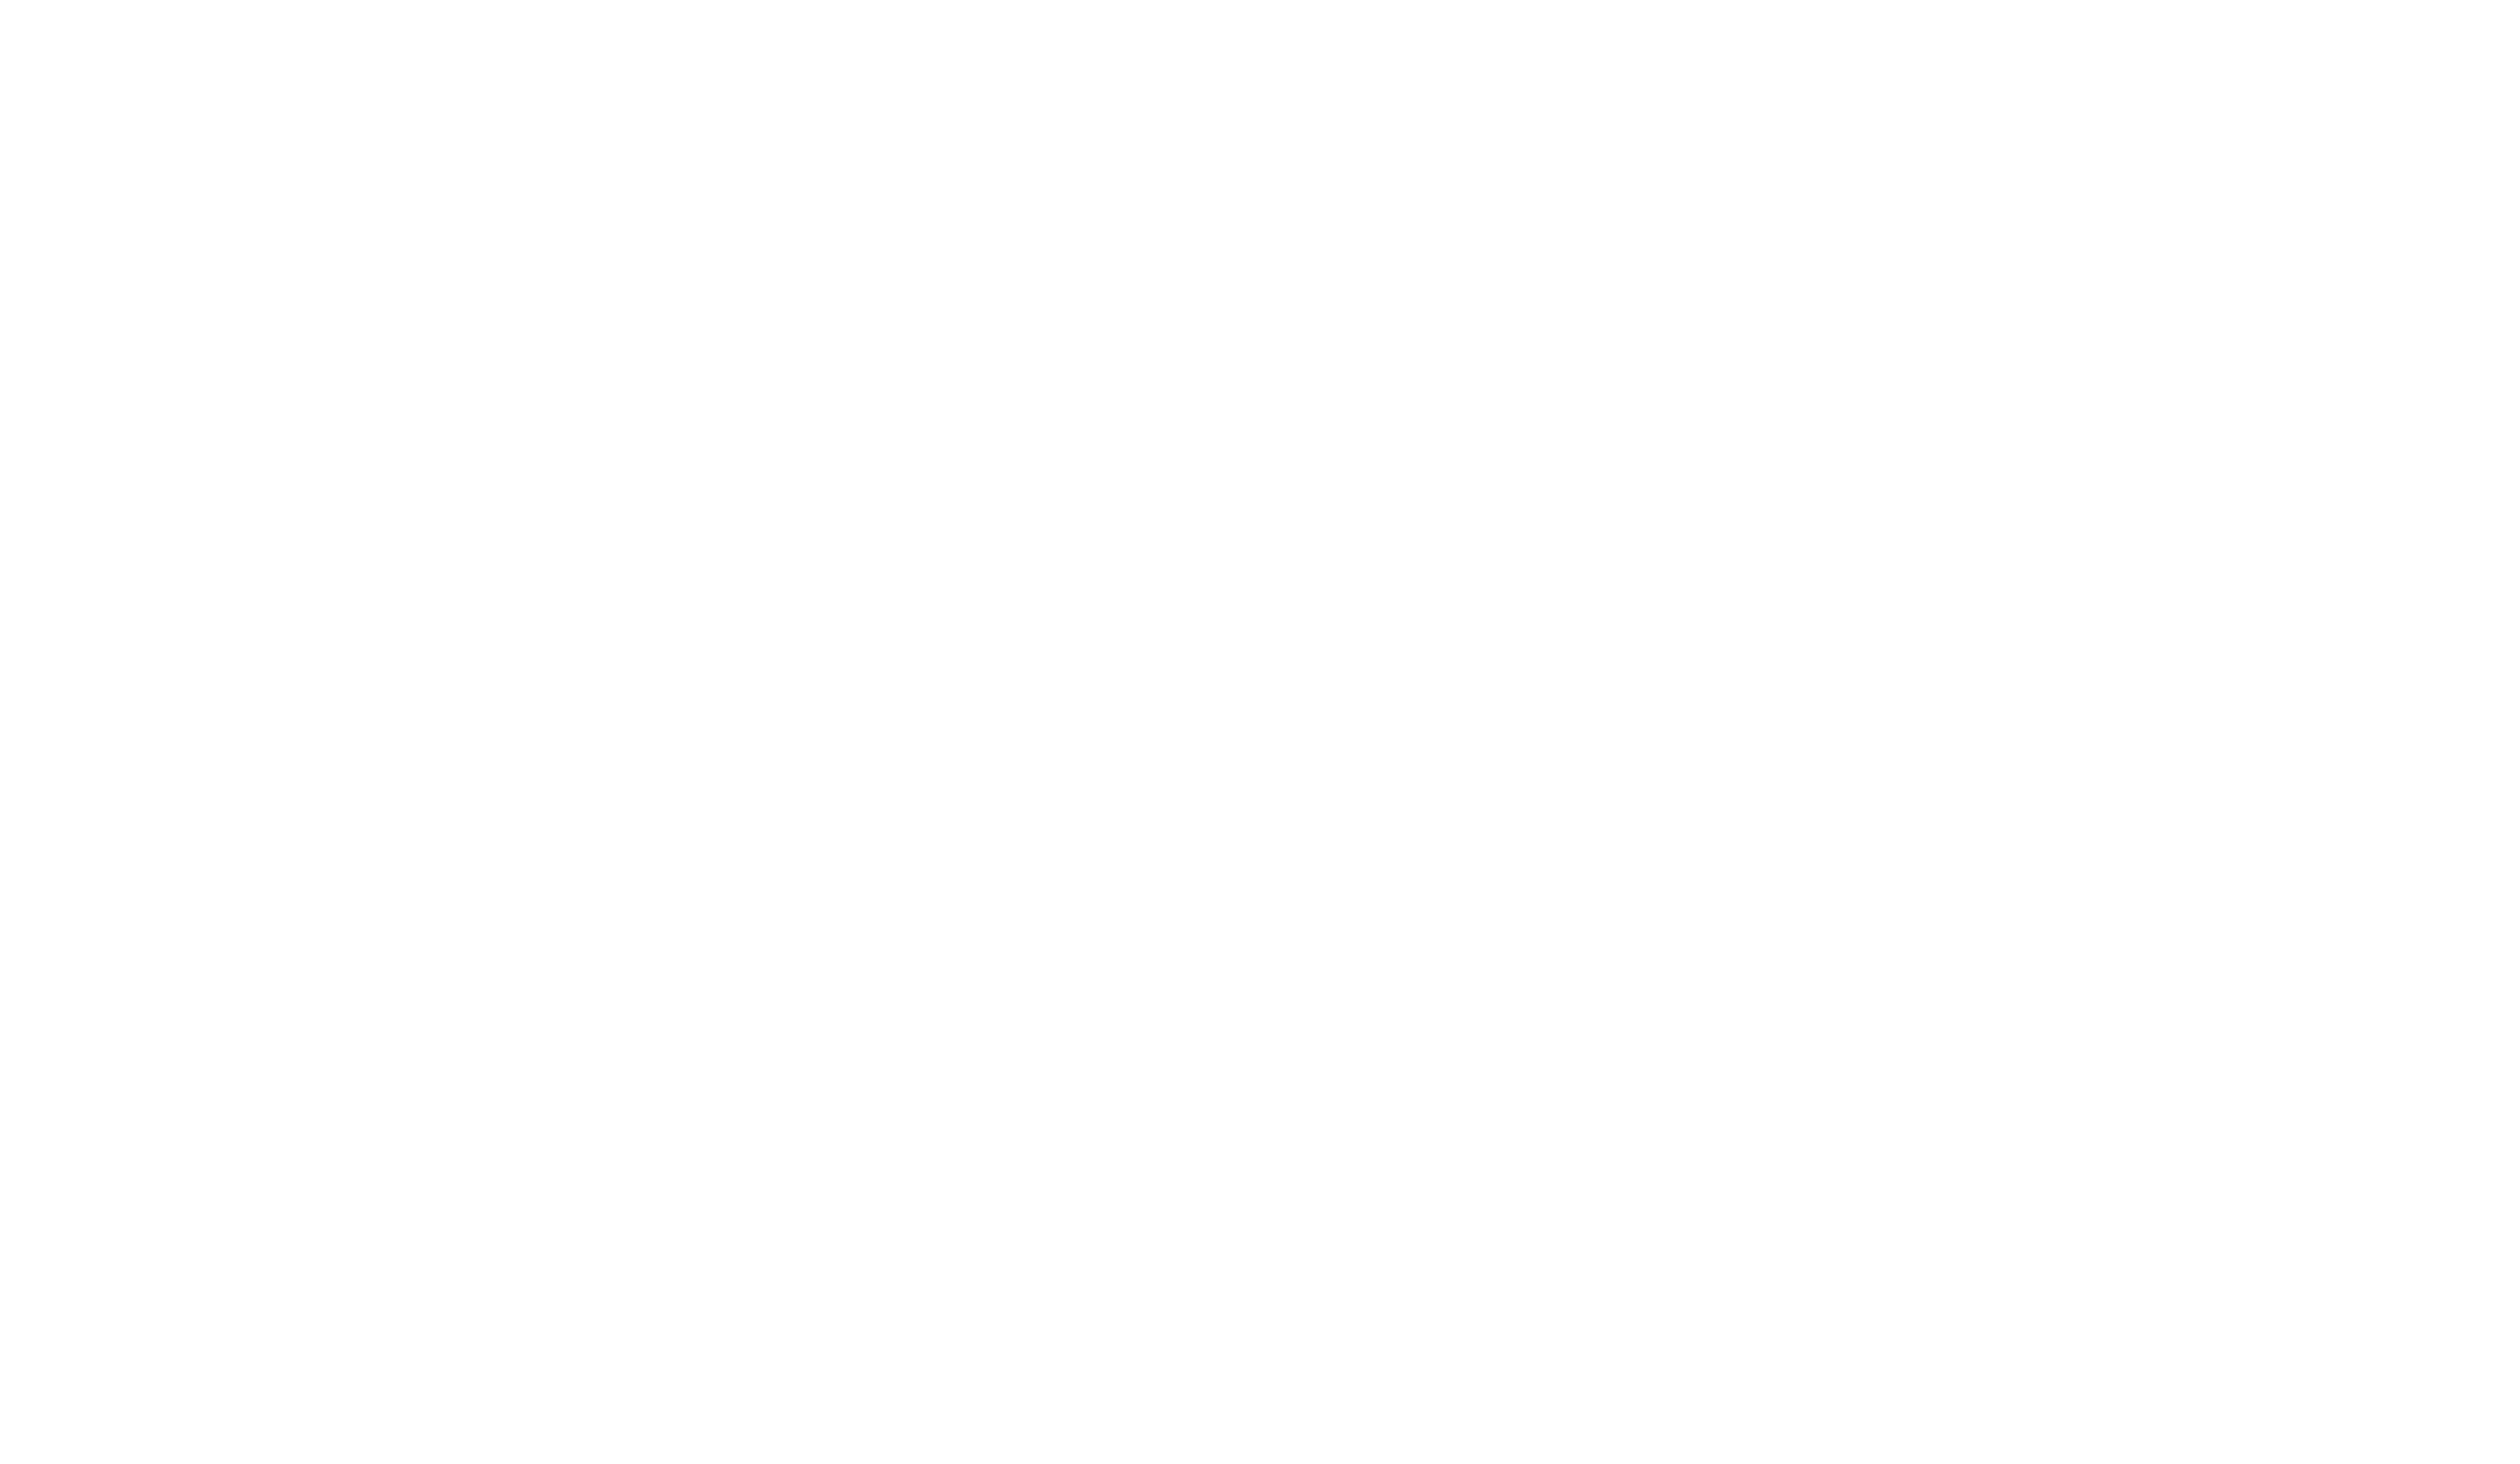 Chris Facello Group